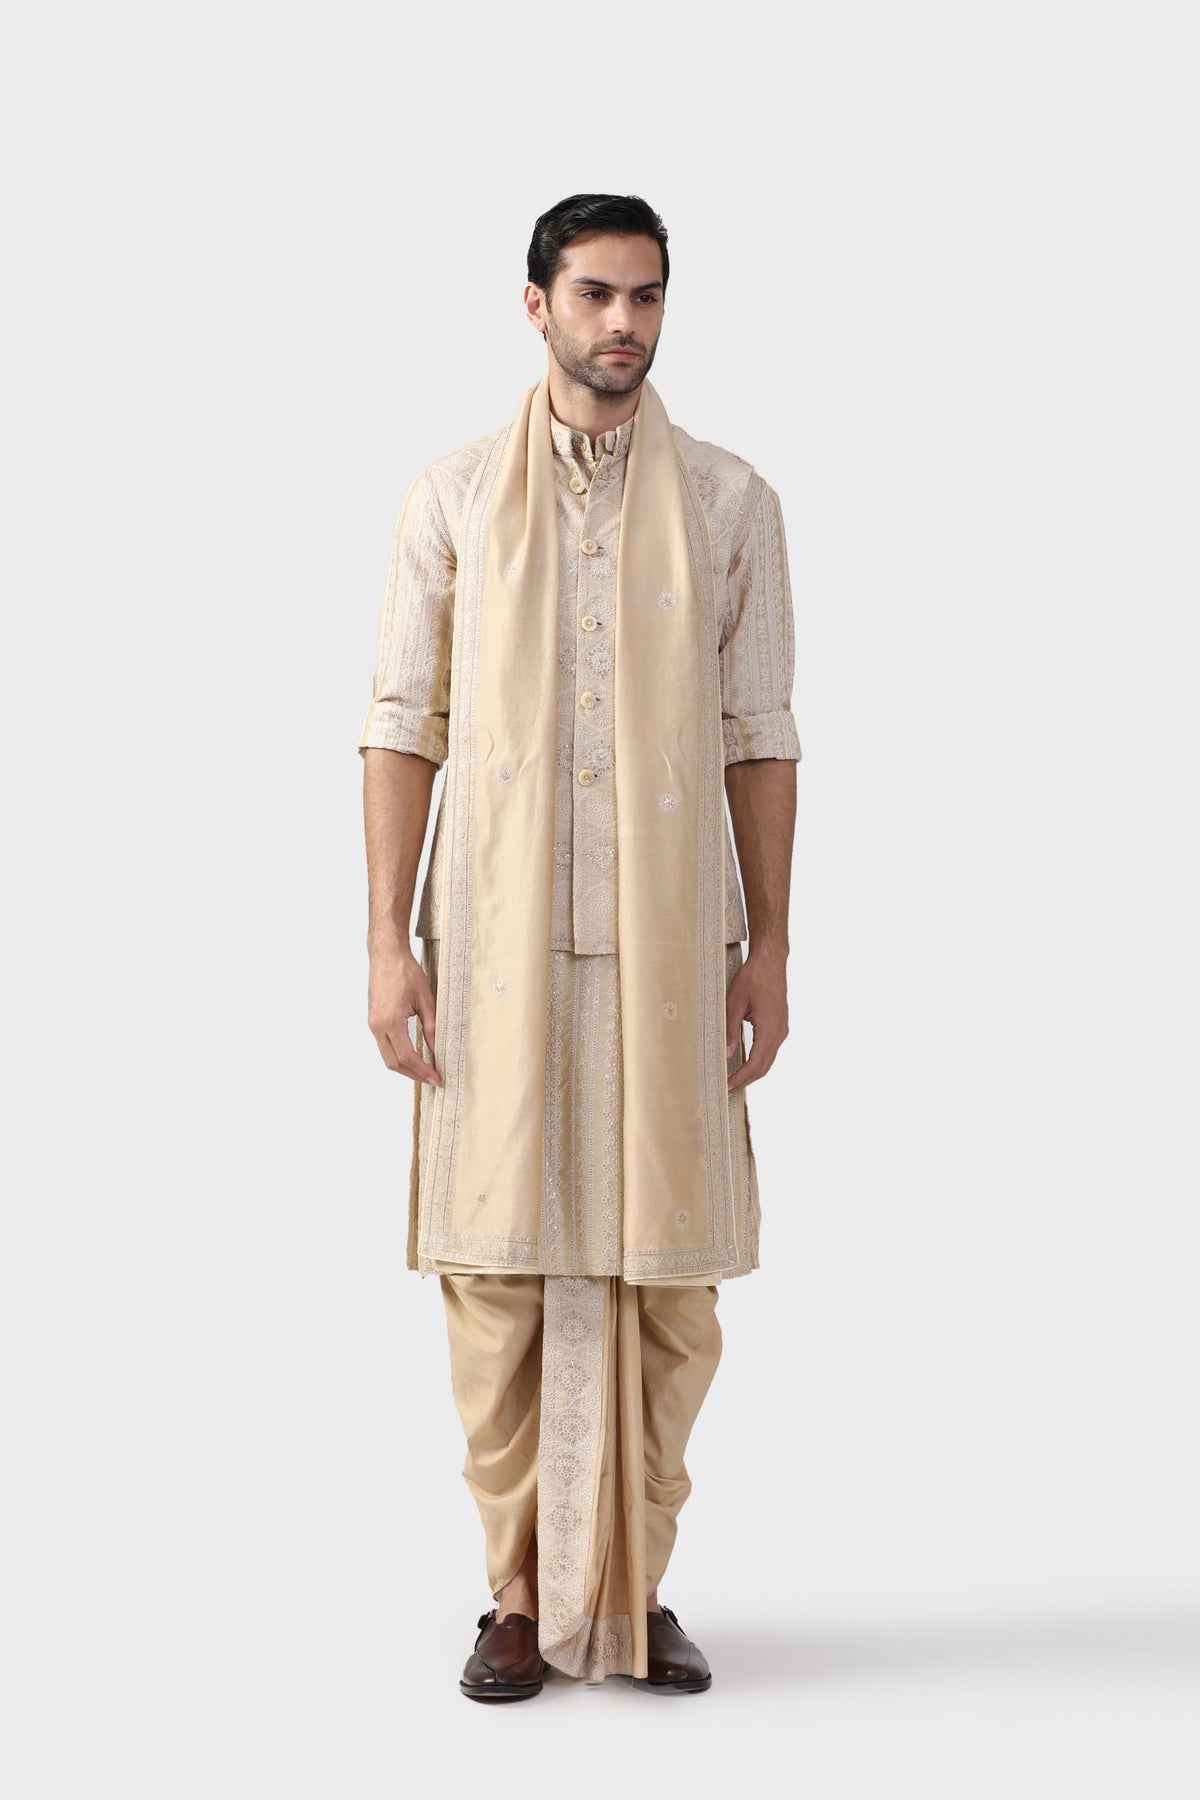 The Decorative Chhatri Waistcoat